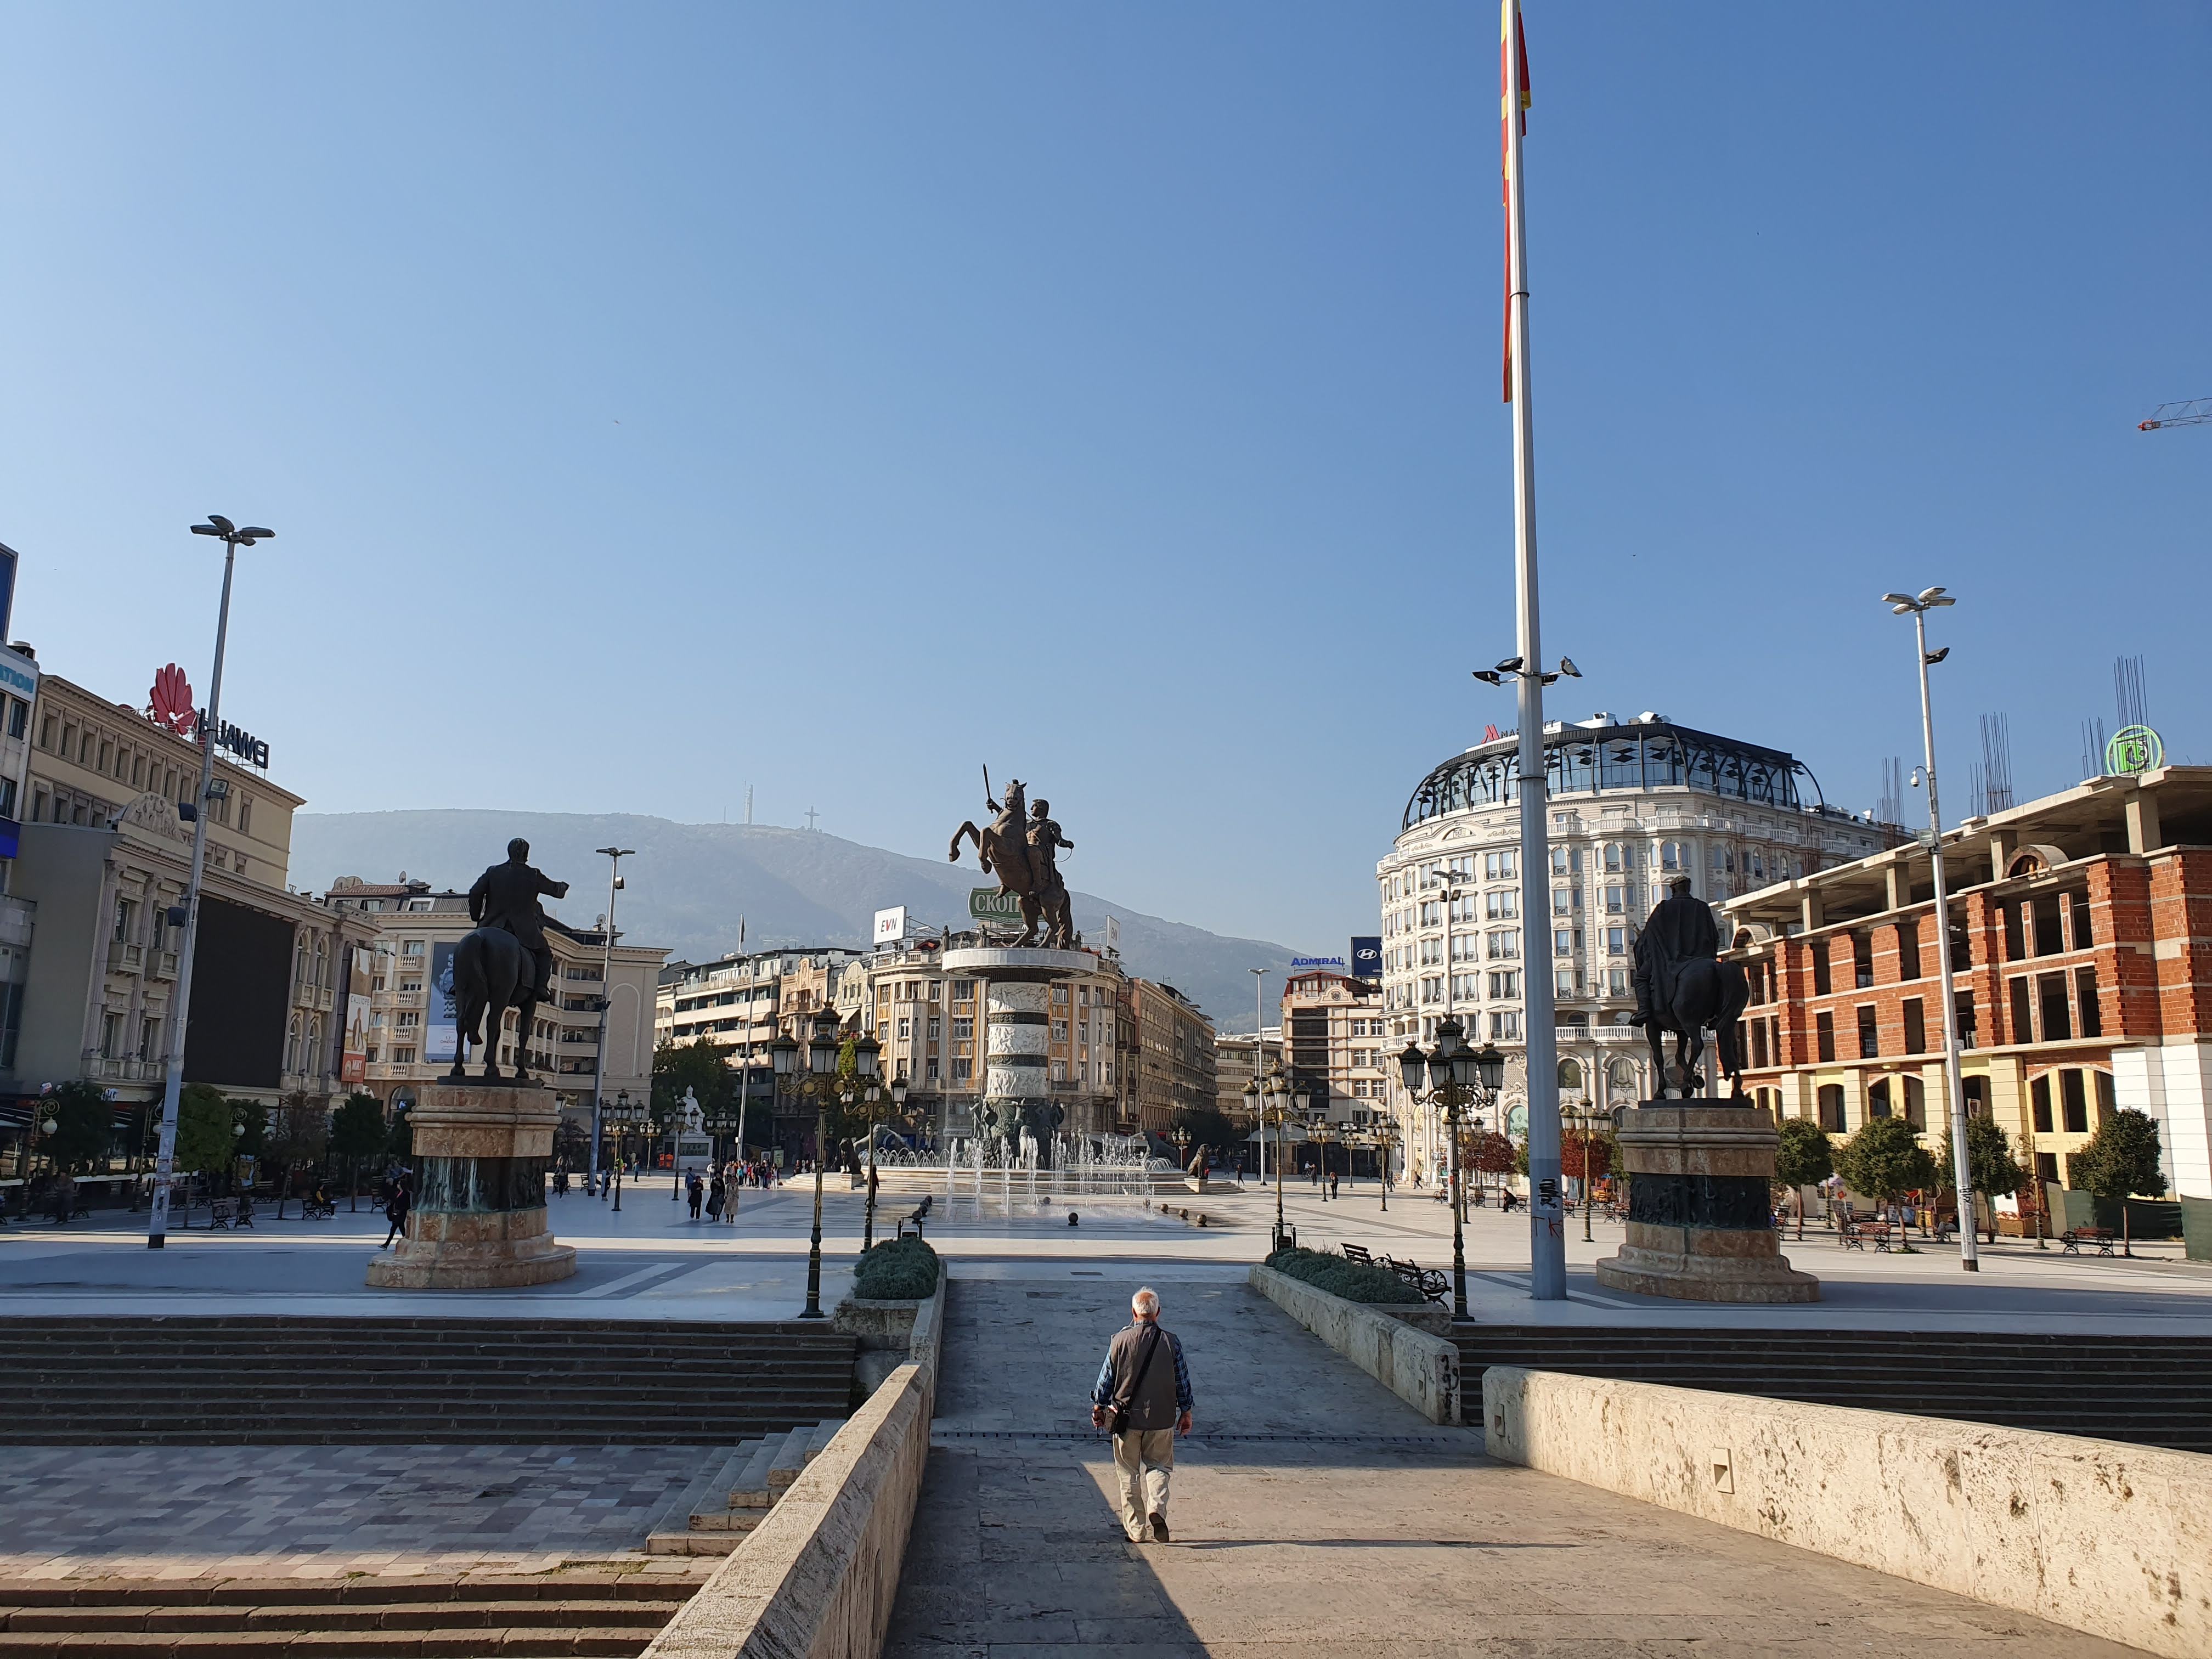 A város centruma és egyik legfőbb látványossága a Nagy Sándor szobor. <br />Görög tiltakozás miatt hivatalosan ‘csak‘ A harcos nevet viseli.